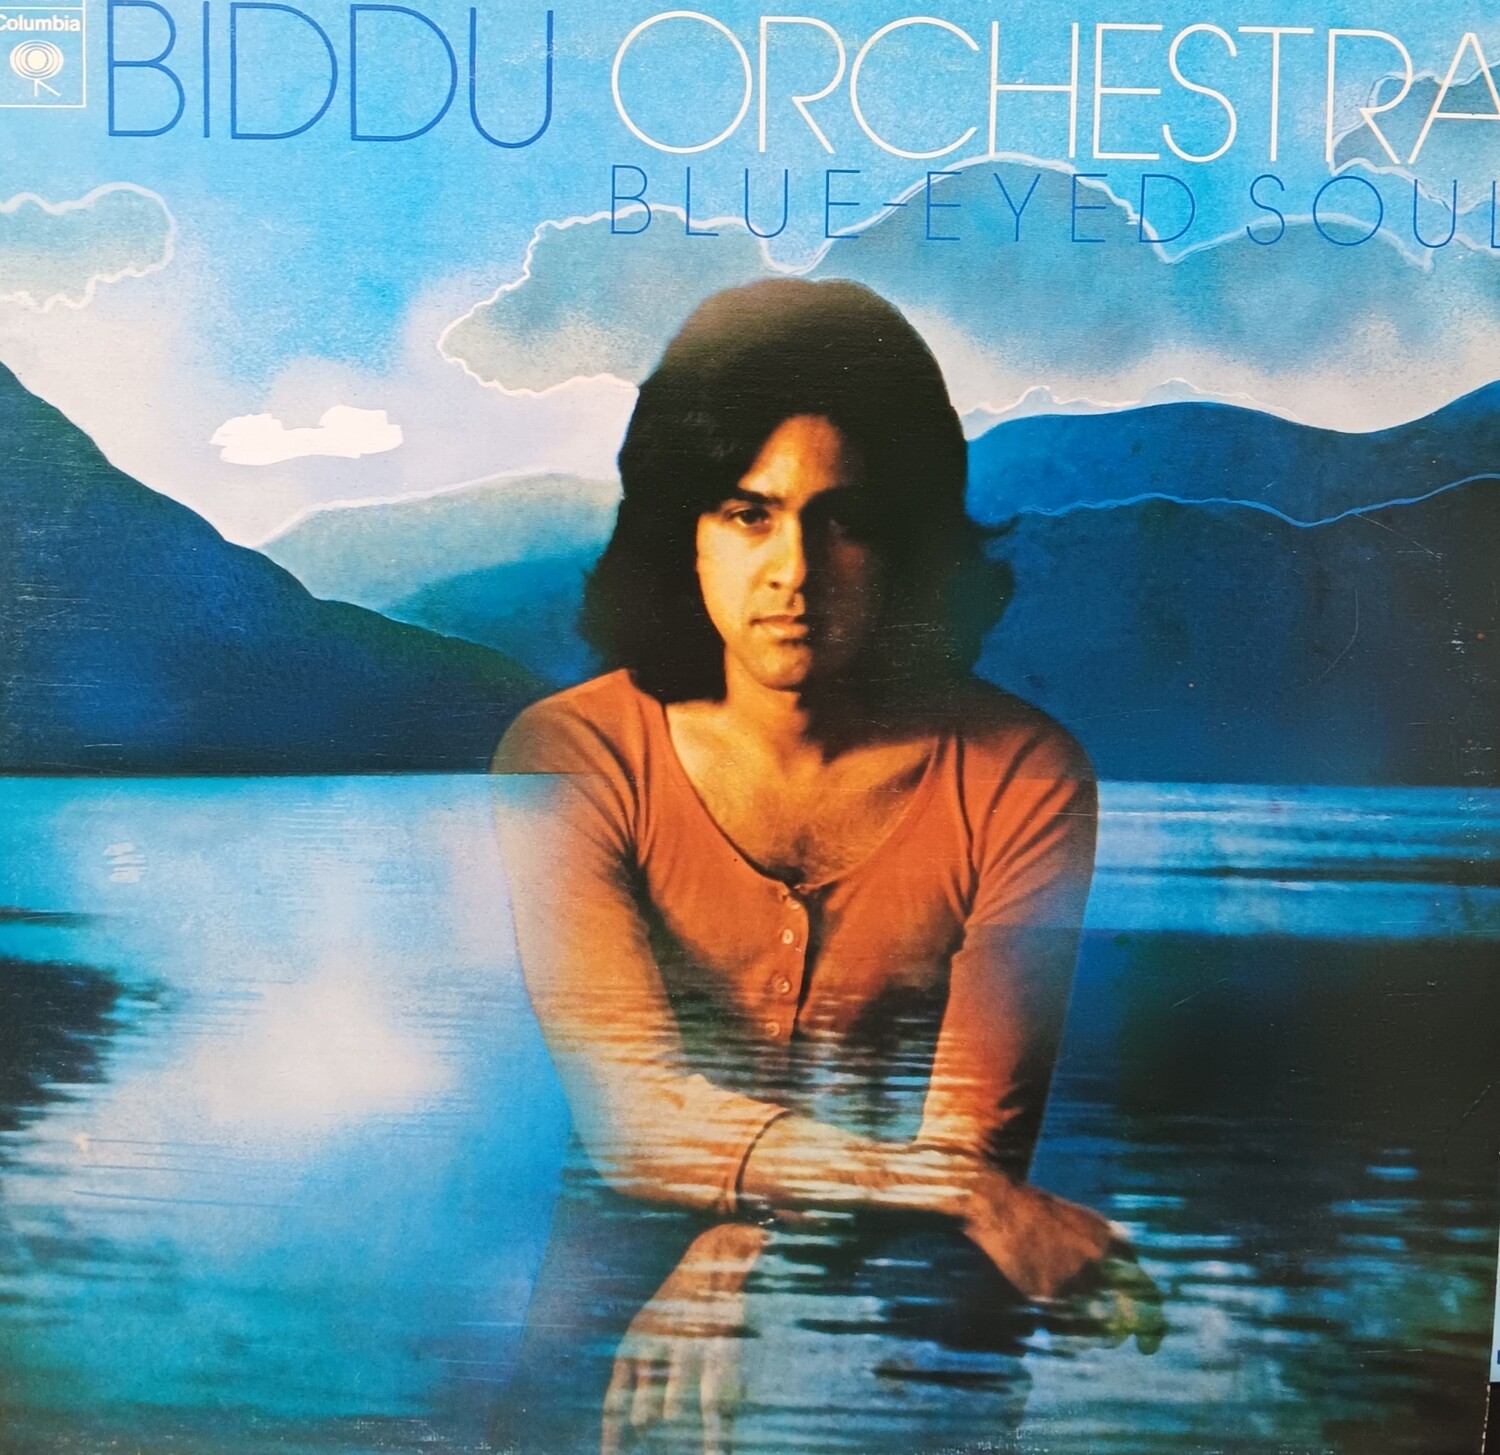 BIDDU ORCHESTRA - Blue Eyed soul